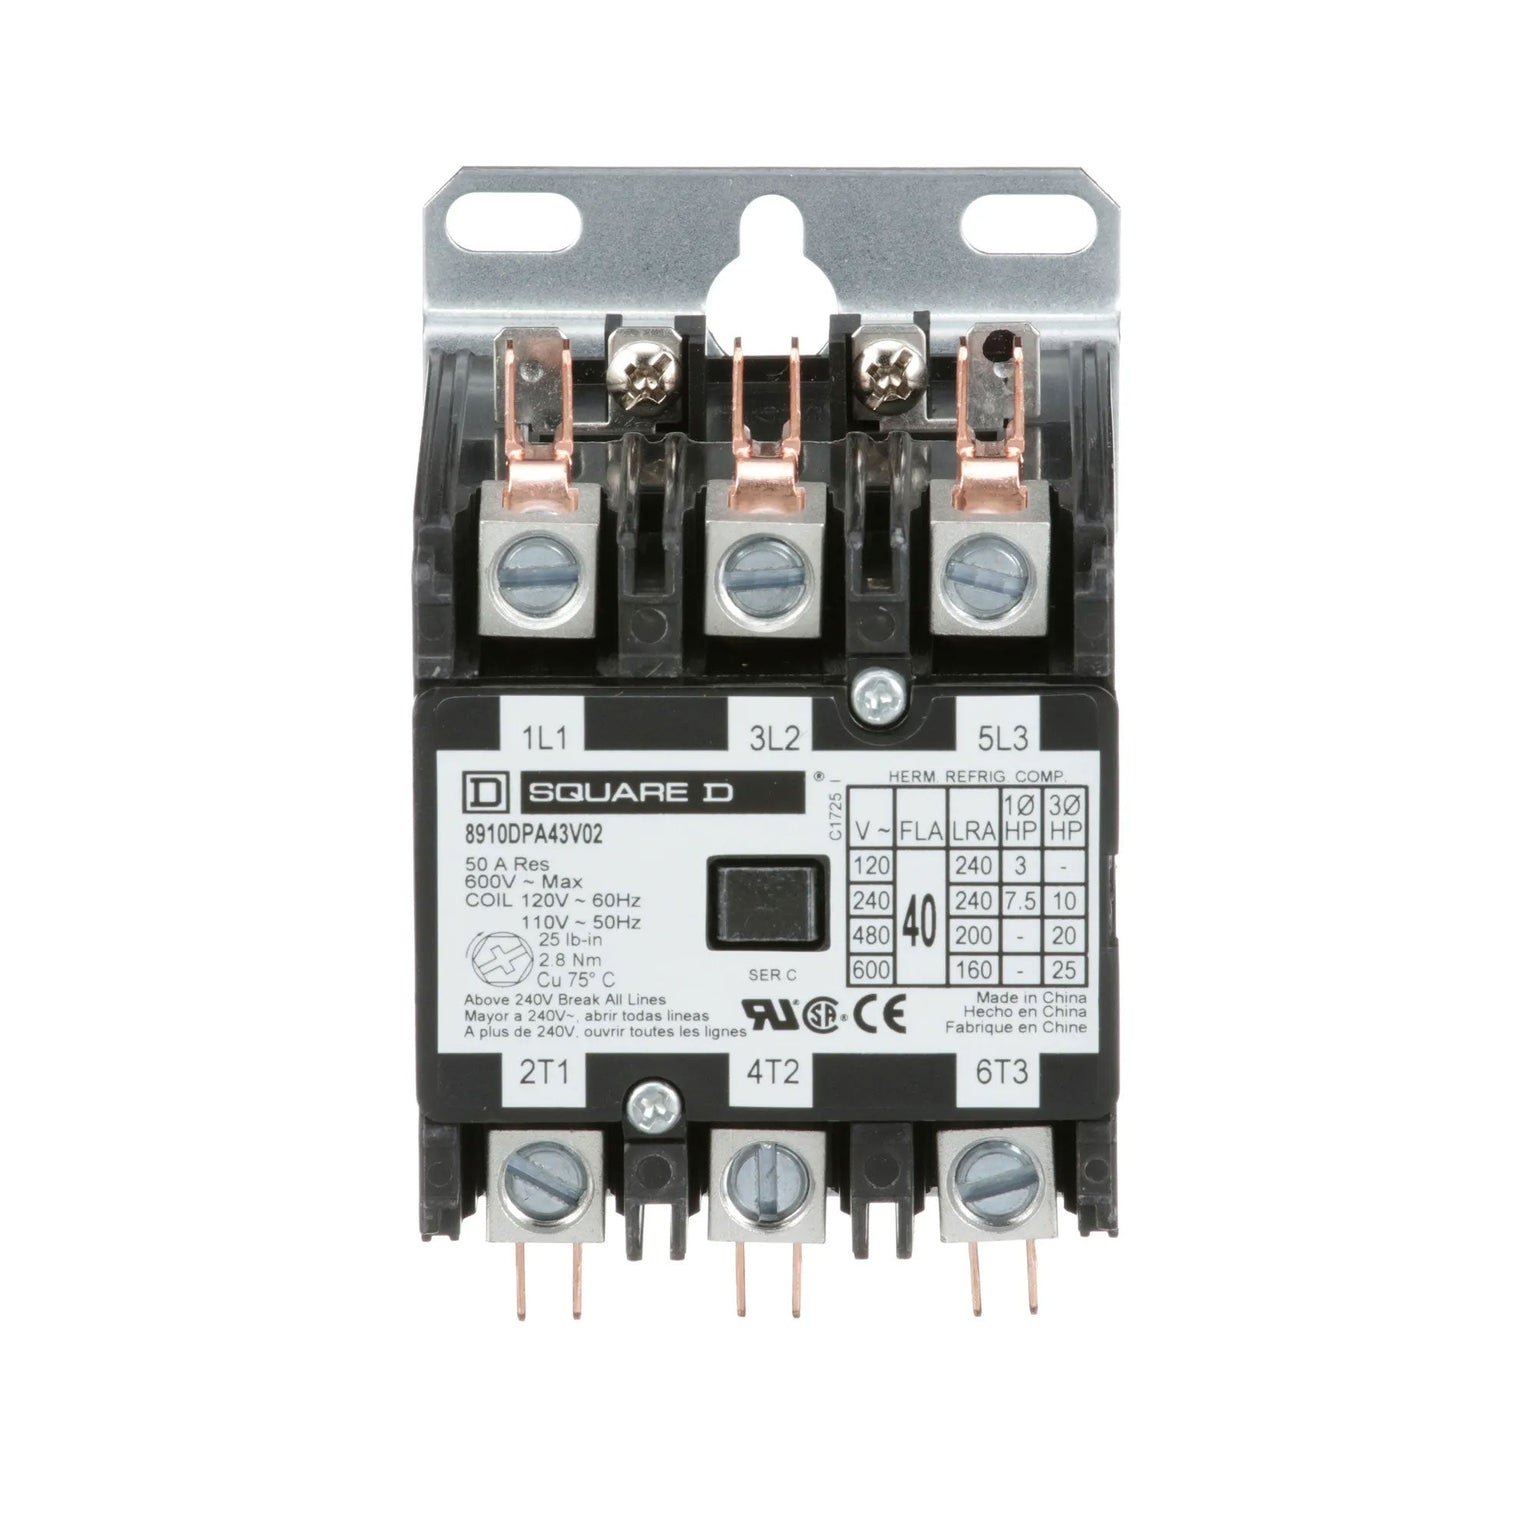 8910DPA43V02 - Square D - Contactor